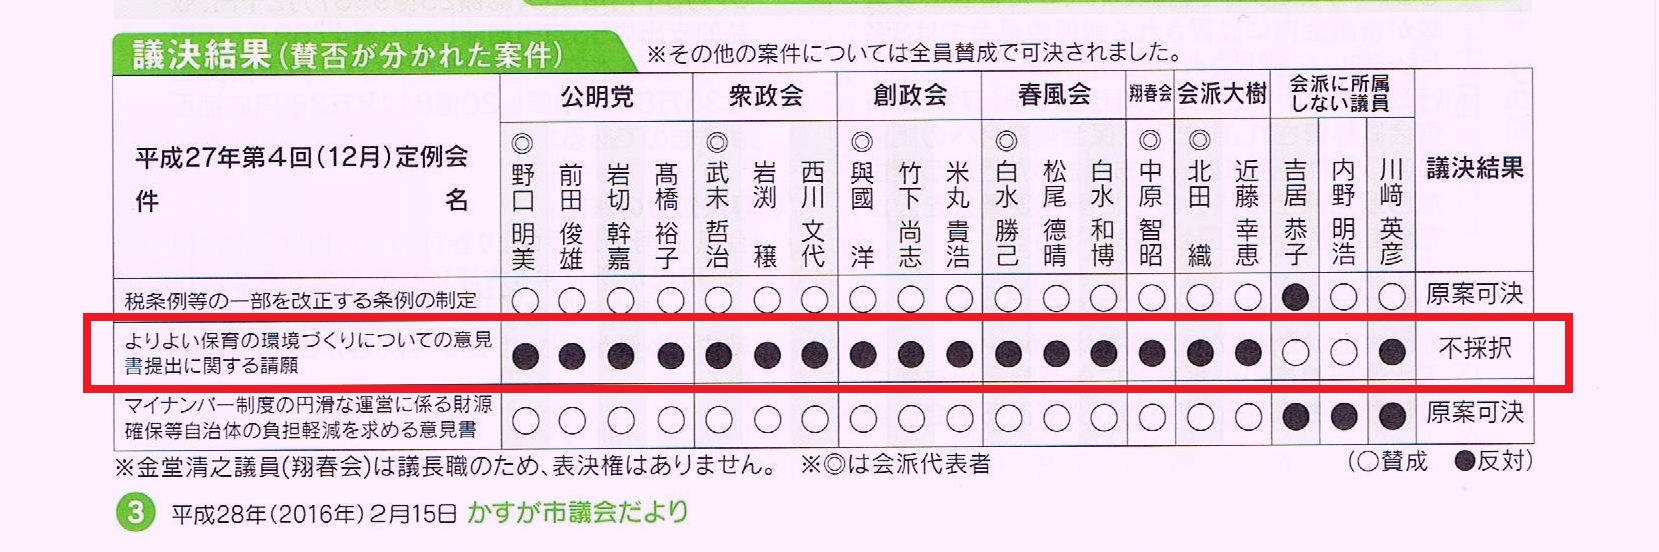 http://hunter-investigate.jp/news/2016/03/09/%E6%98%A5%E6%97%A5%E5%B8%82%E8%AD%B0%E4%BC%9A.jpg